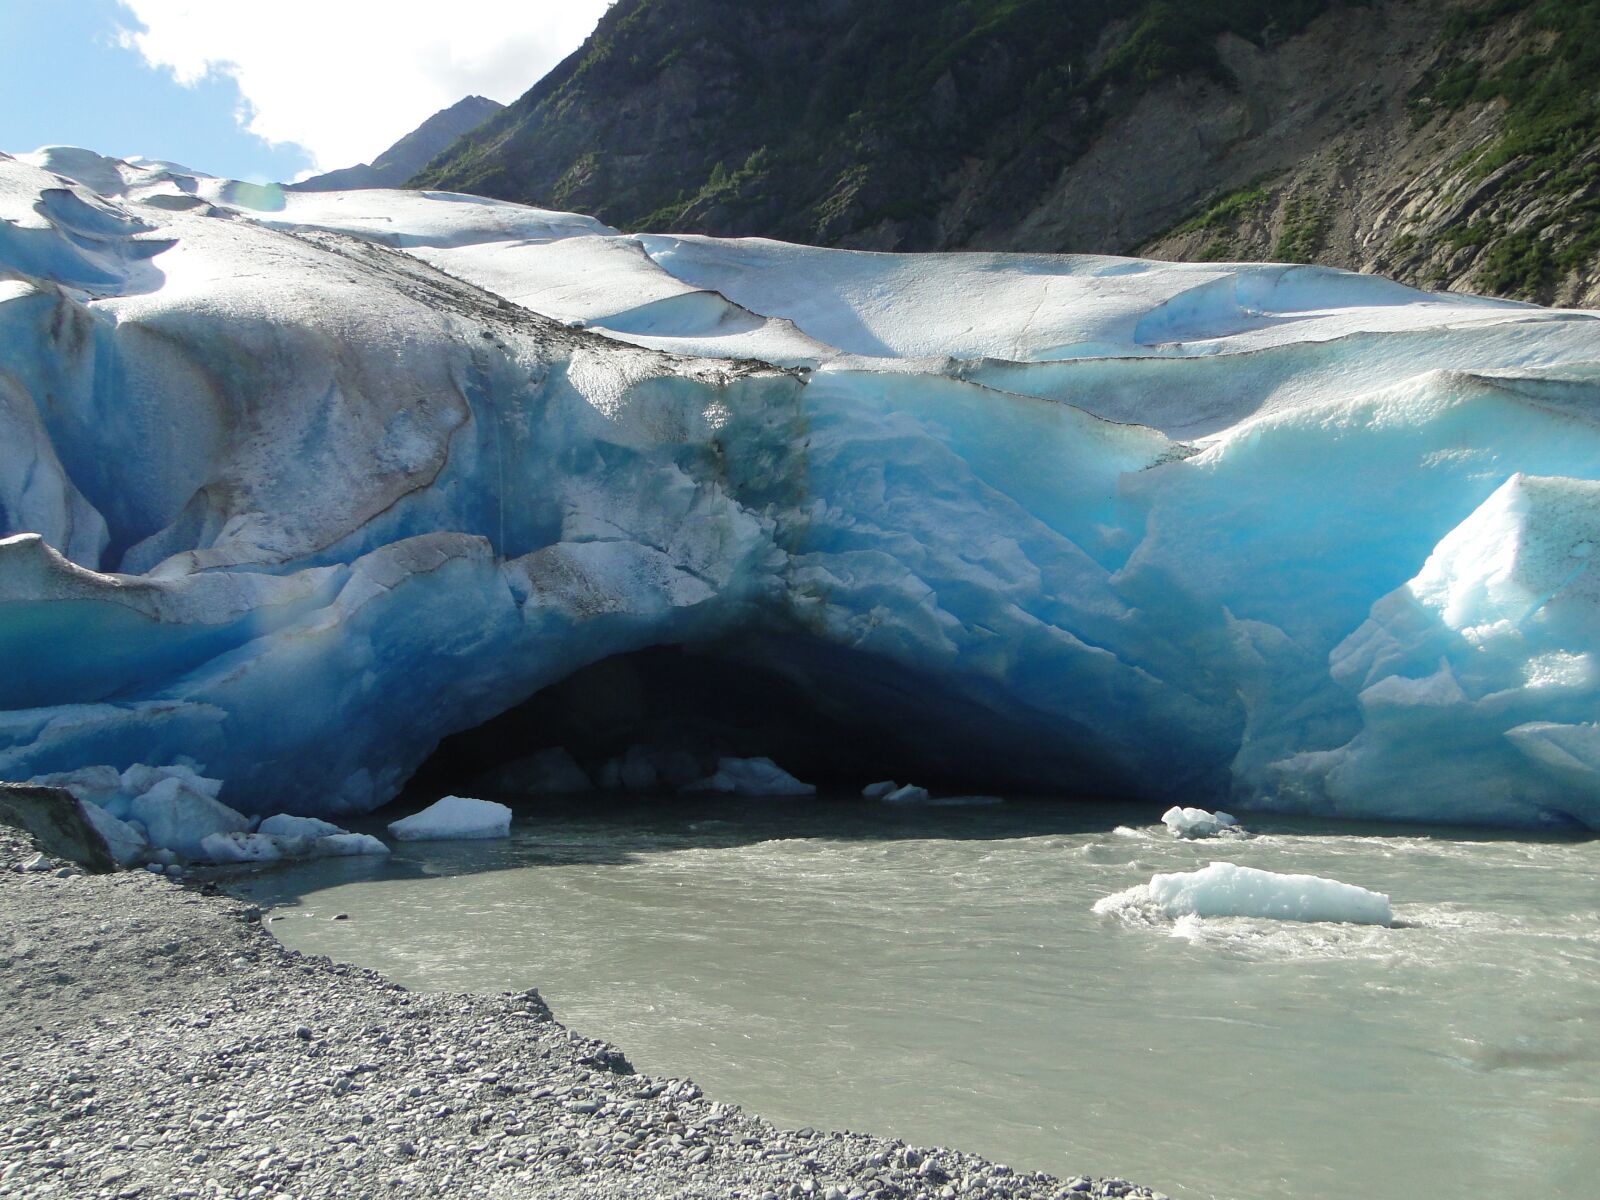 Sony Cyber-shot DSC-HX1 sample photo. Alaska, glacier, cave photography